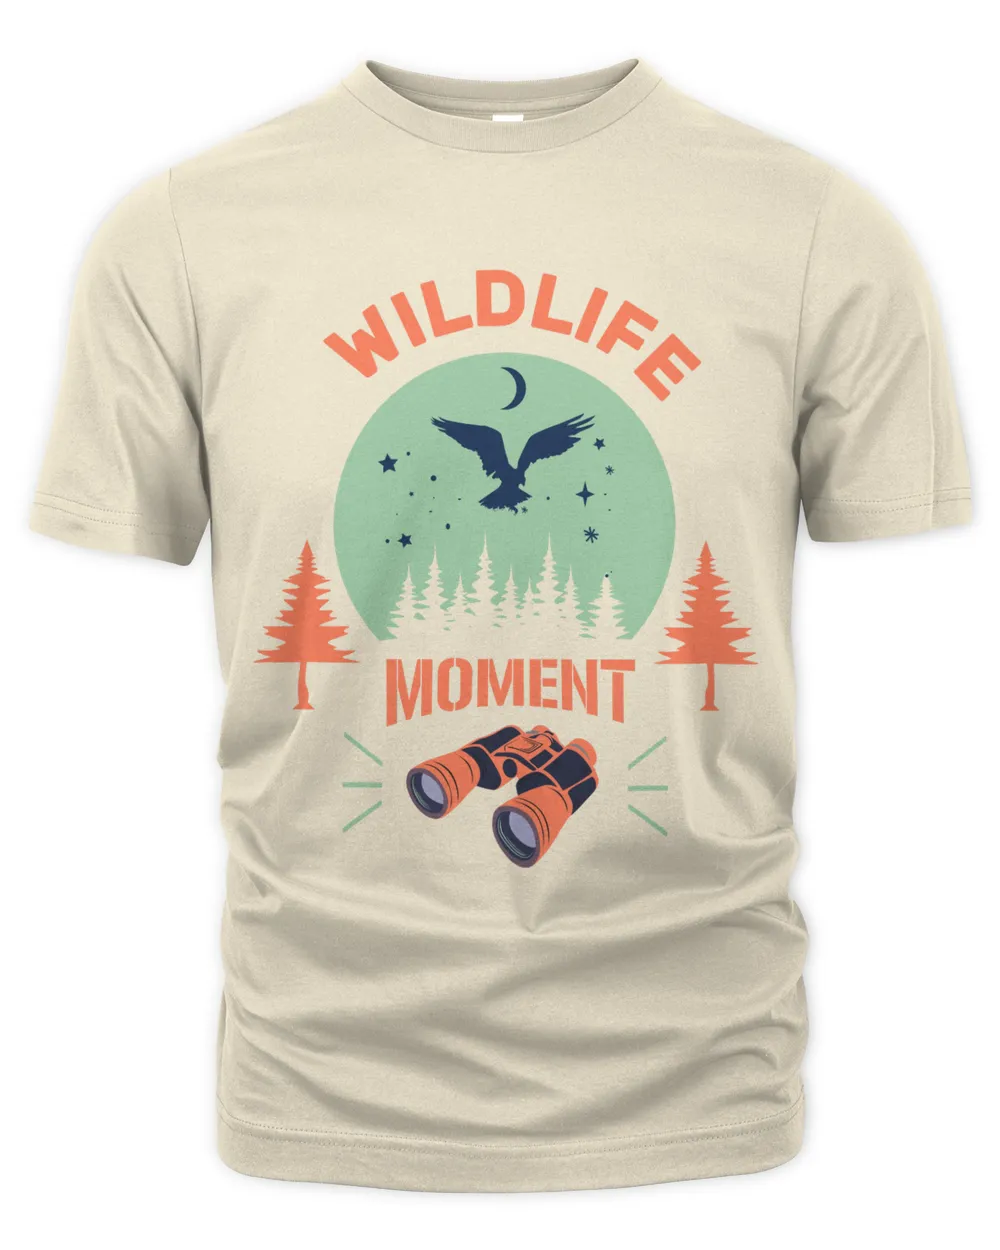 Hunting T-Shirt, Hunting Shirt Design